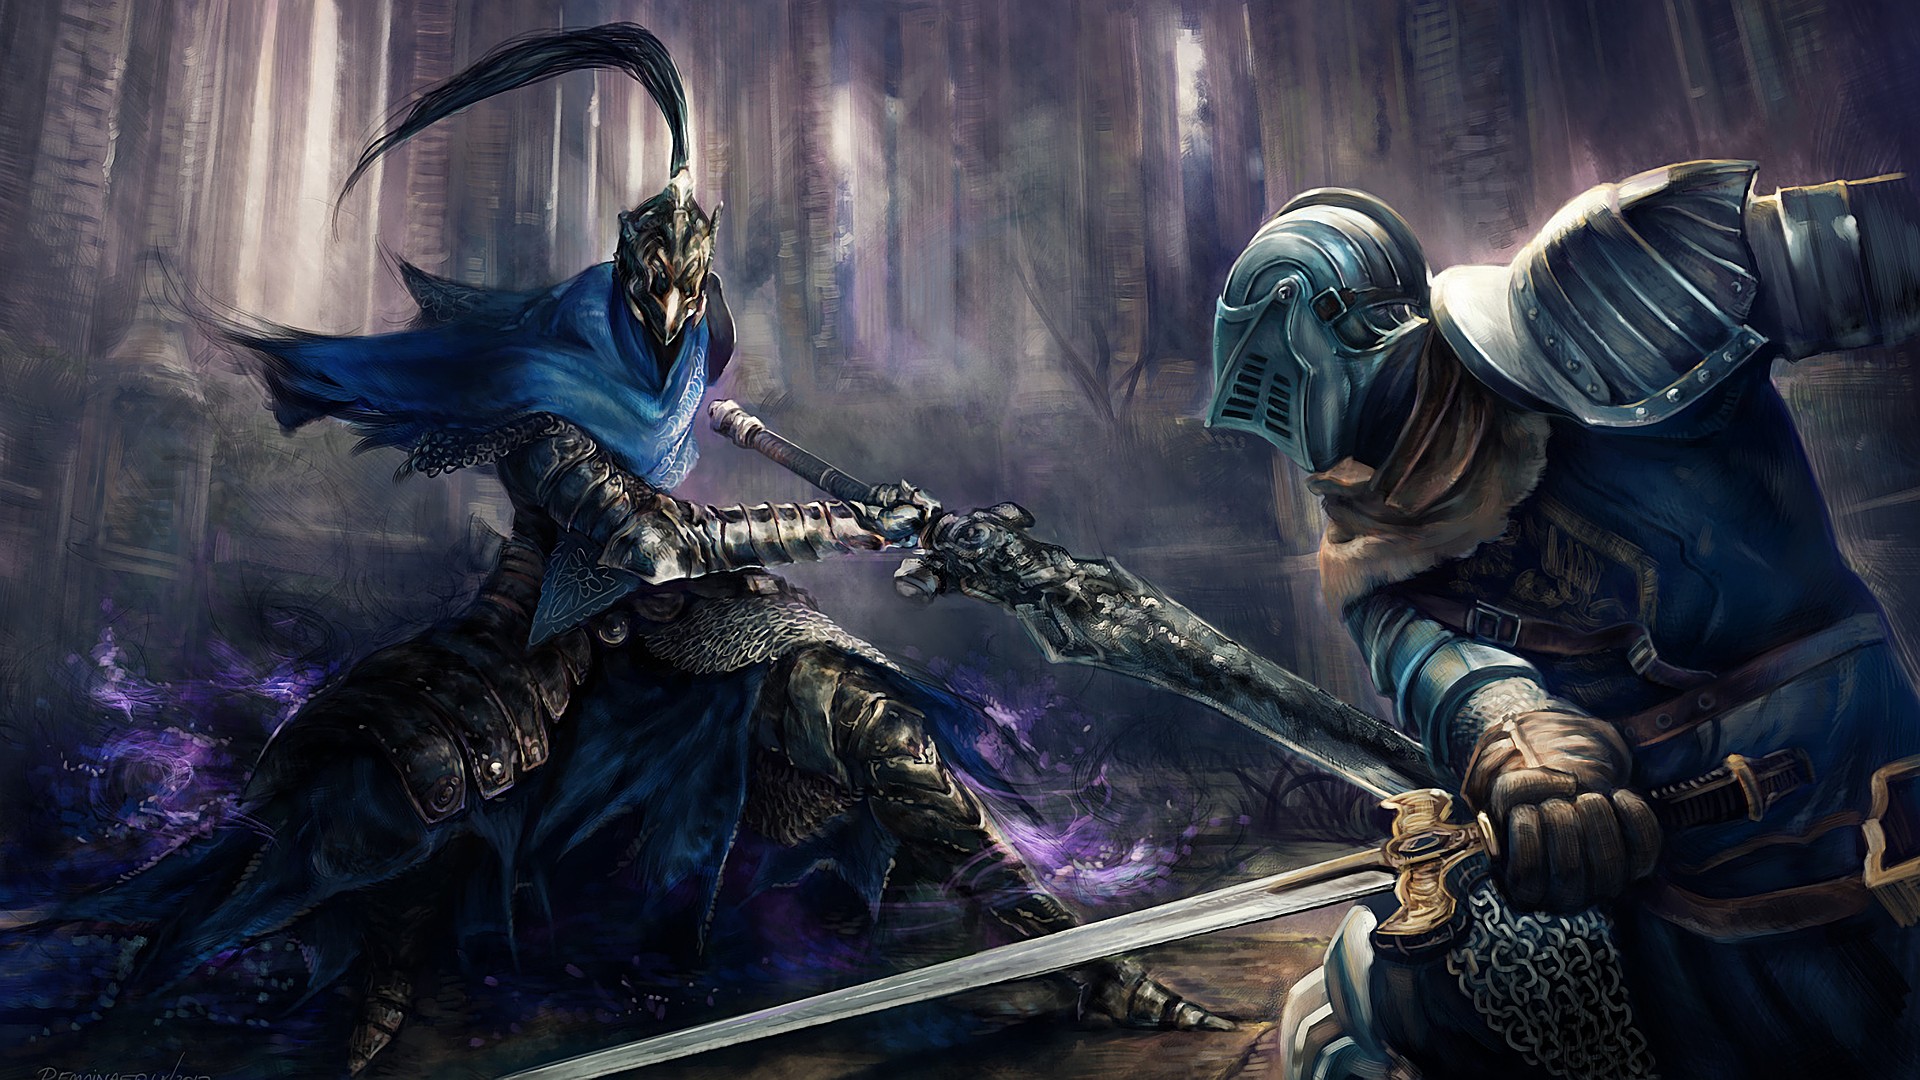 Fantasy Art Dark Souls Artorias The Abysswalker Knight 1920x1080